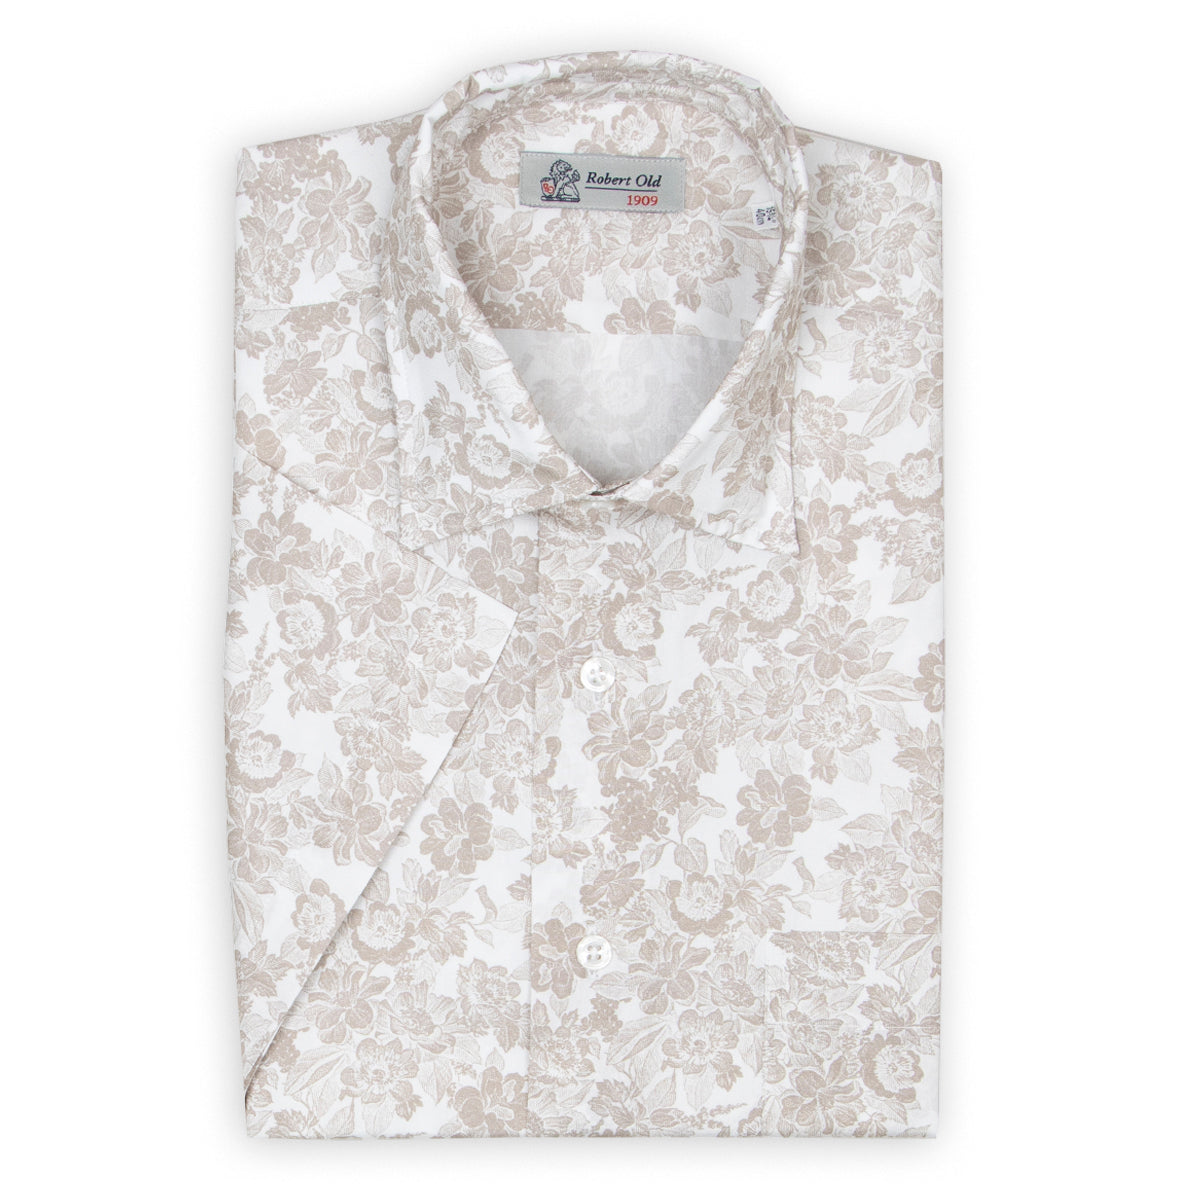 Beige Floral 100% Swiss Cotton Short Sleeve Shirt  Robert Old   